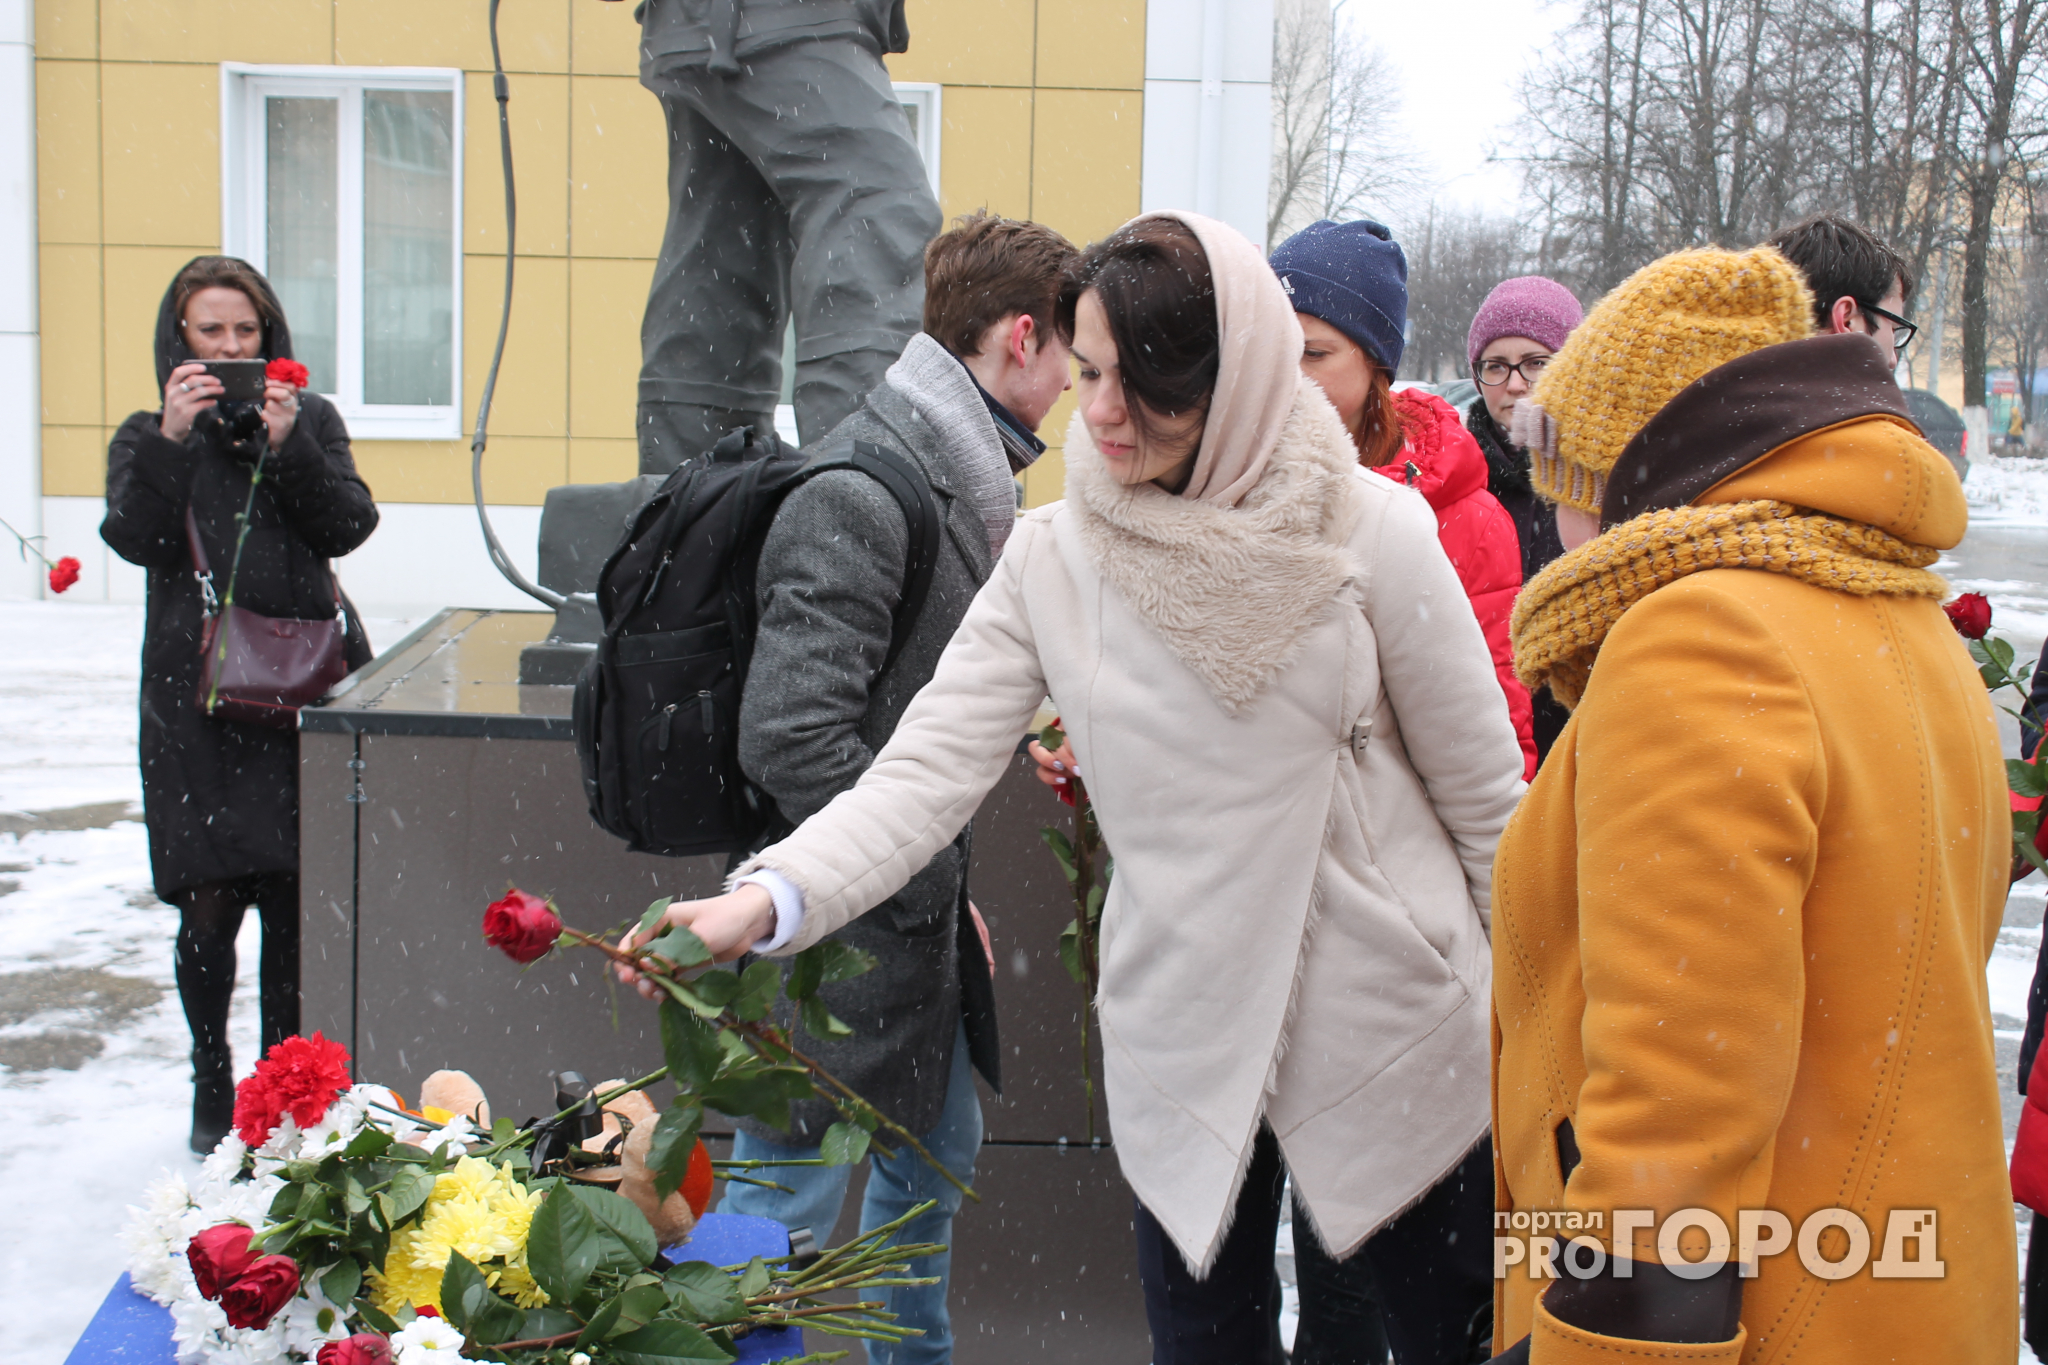 Во Владимире состоялась акция памяти жертв пожара в Кемерово